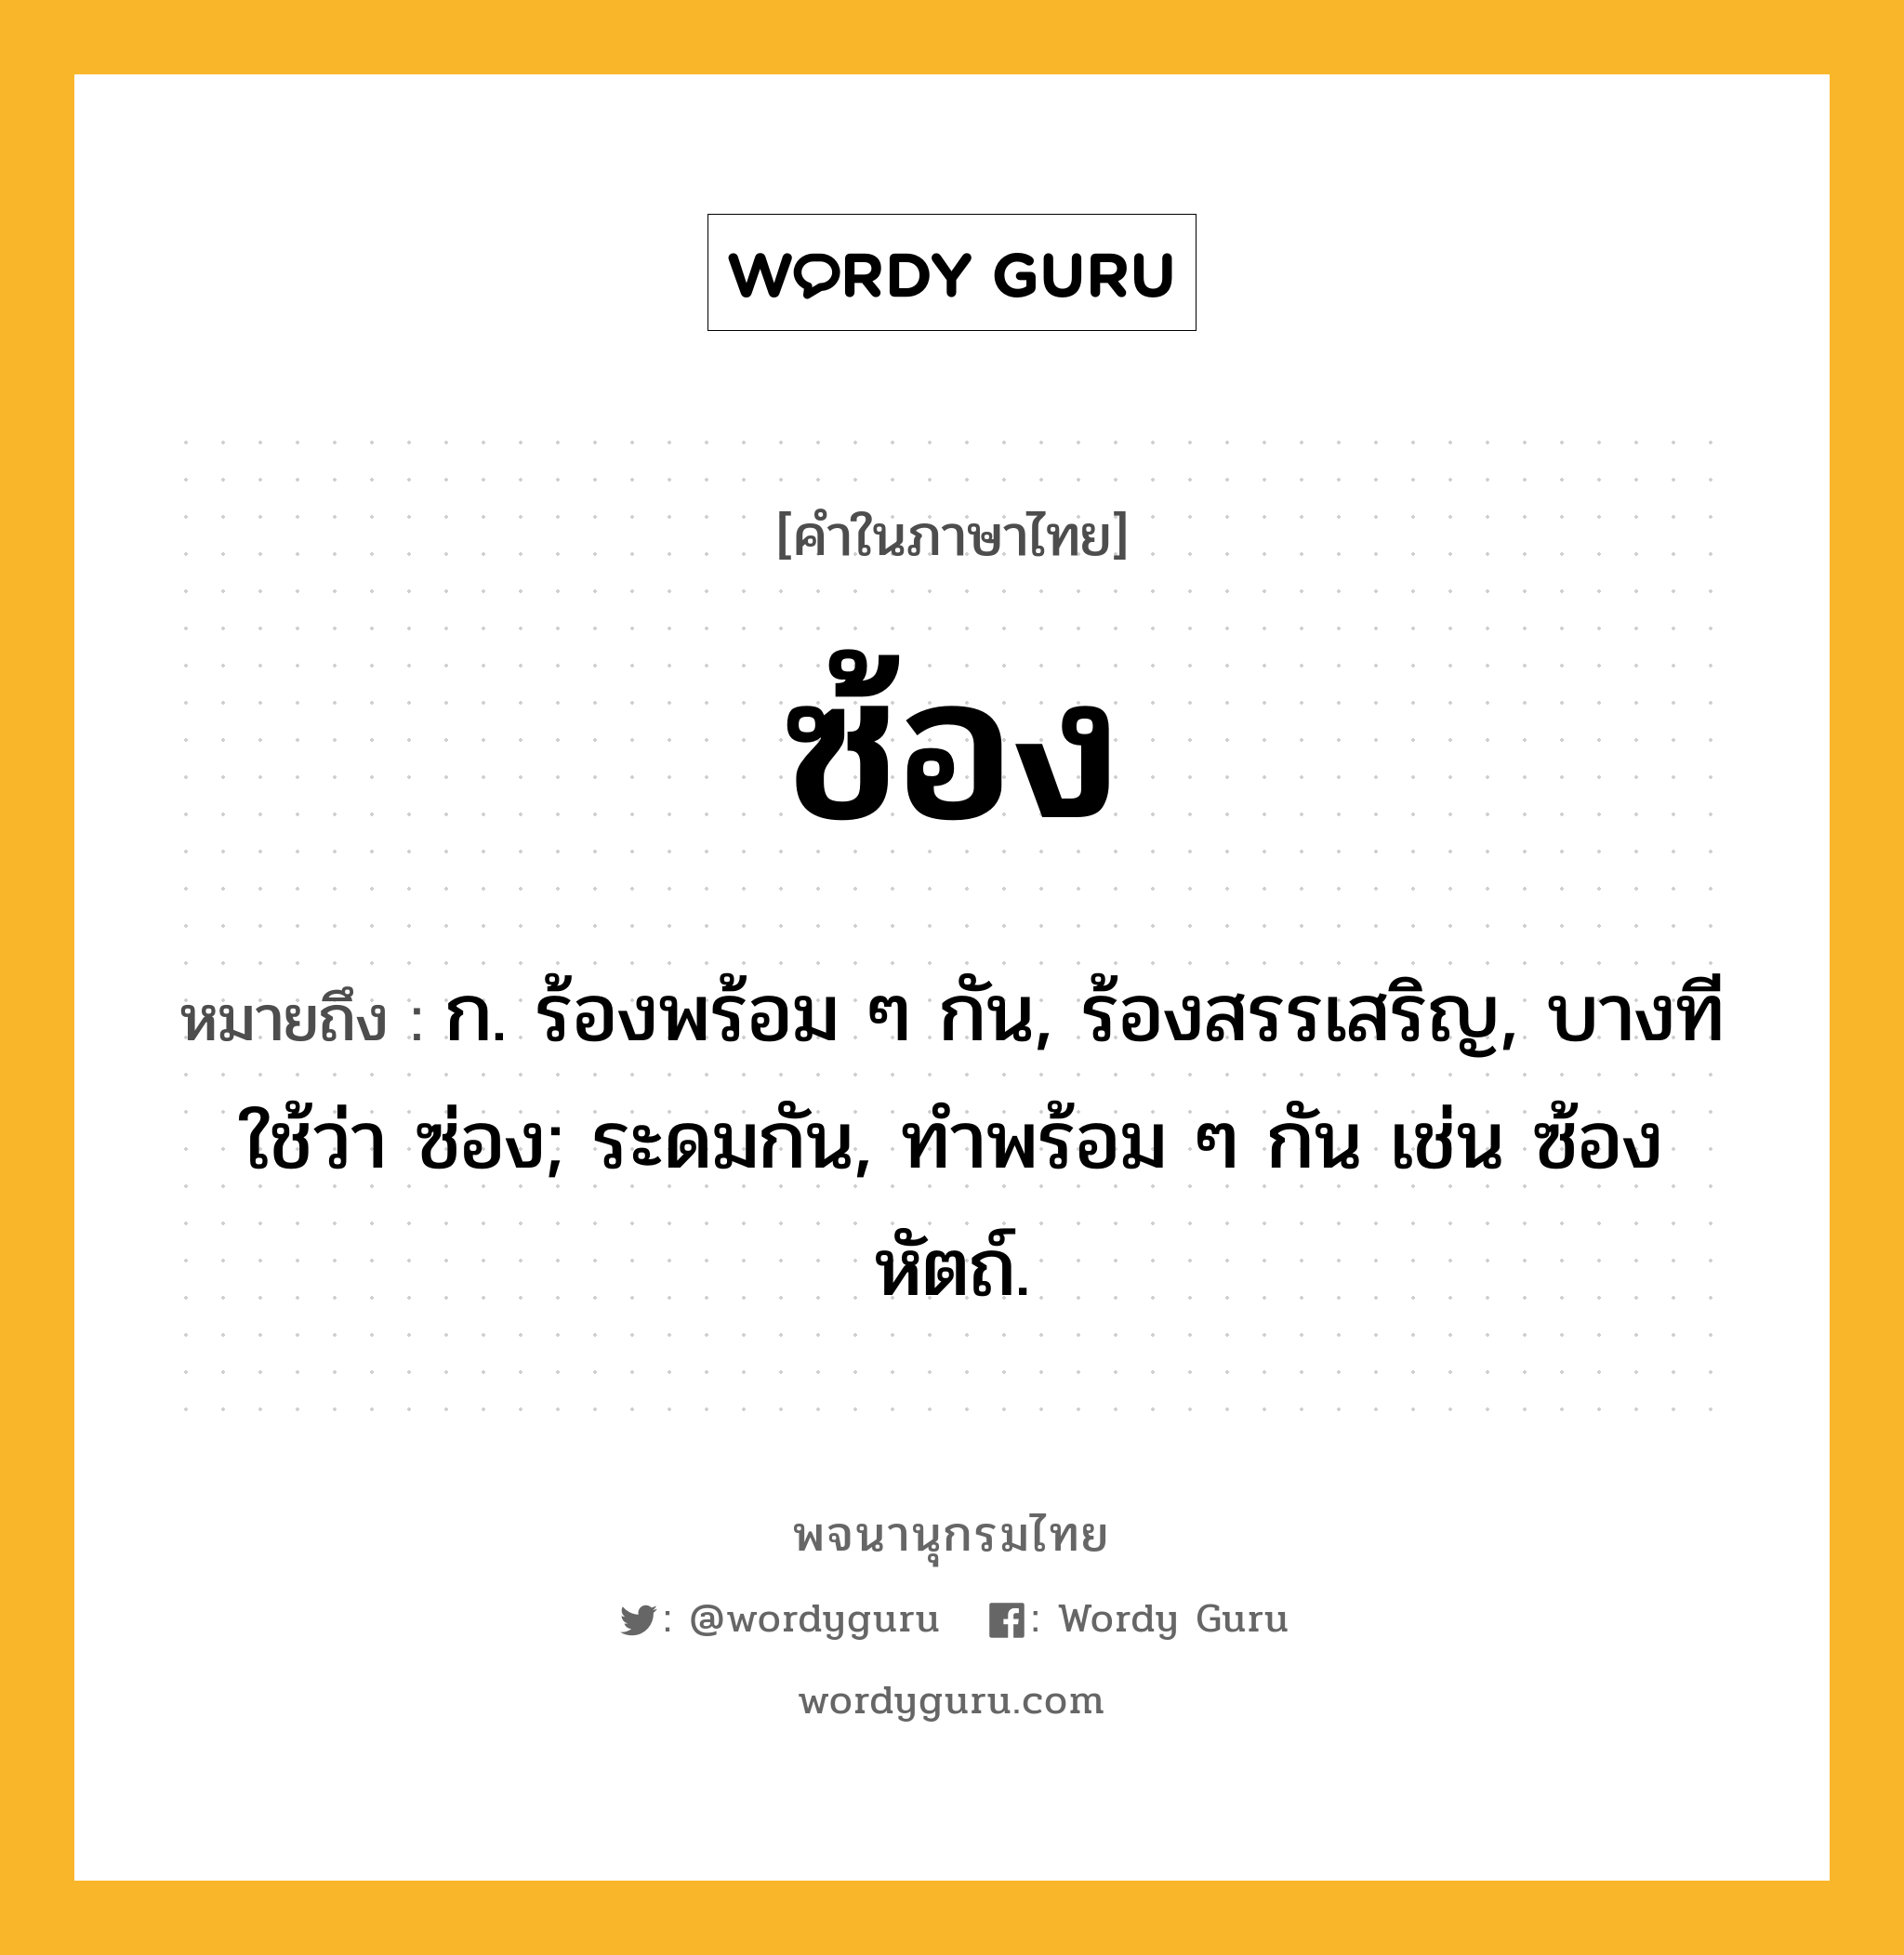 ซ้อง ความหมาย หมายถึงอะไร?, คำในภาษาไทย ซ้อง หมายถึง ก. ร้องพร้อม ๆ กัน, ร้องสรรเสริญ, บางทีใช้ว่า ซ่อง; ระดมกัน, ทําพร้อม ๆ กัน เช่น ซ้องหัตถ์.